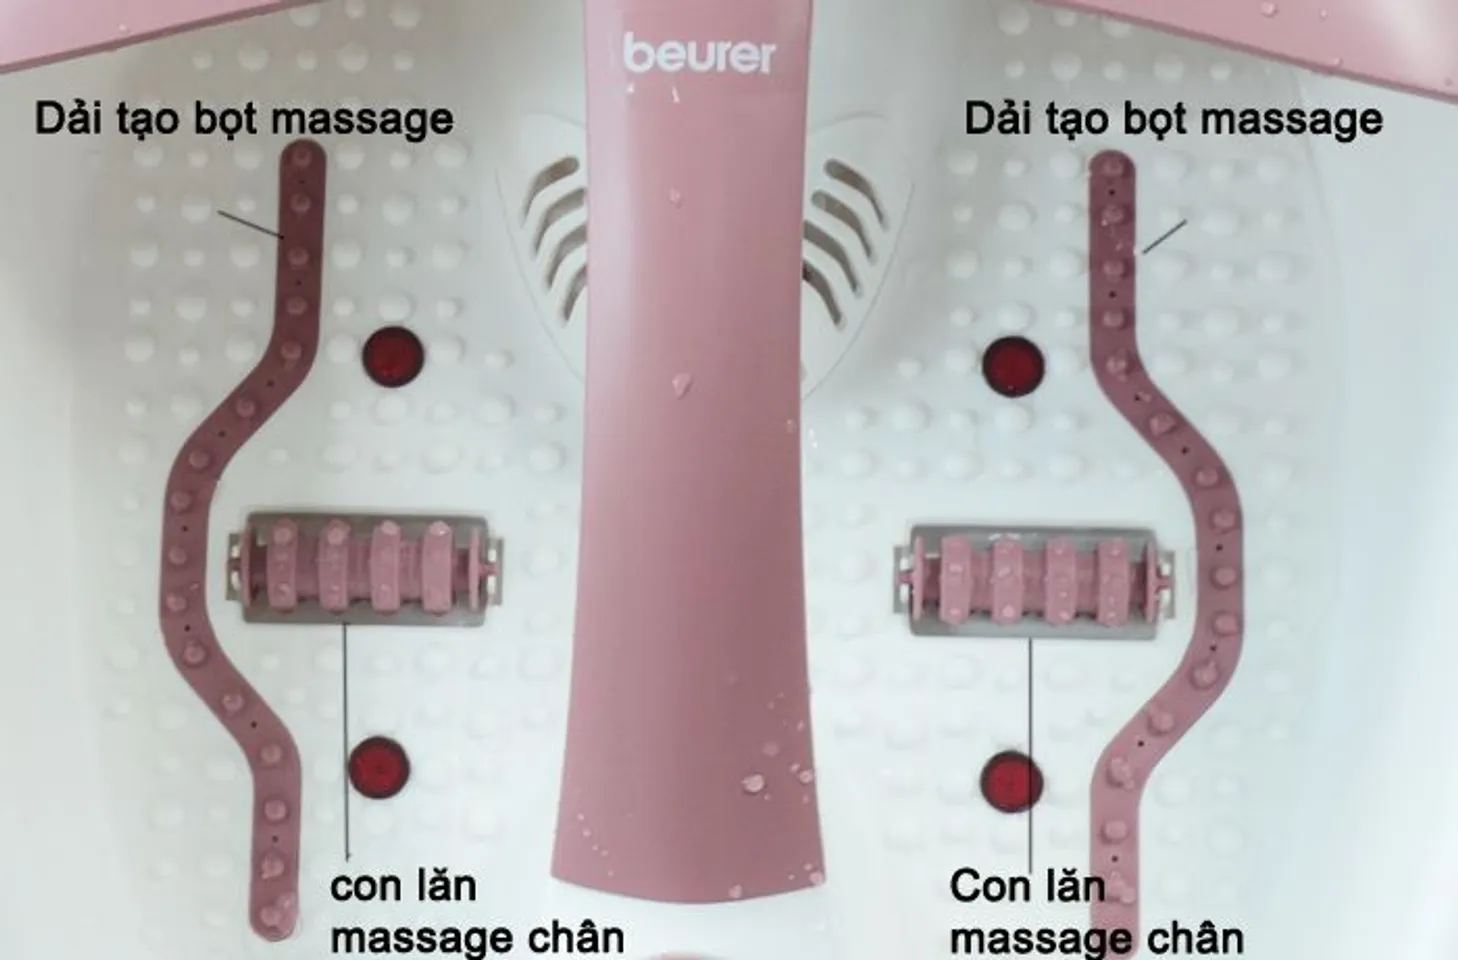 Bồn ngâm chân Beurer Fb35 là thiết bị massage đa chức năng: Massage rung, sủi, khô, chức năng giữ ấm nước